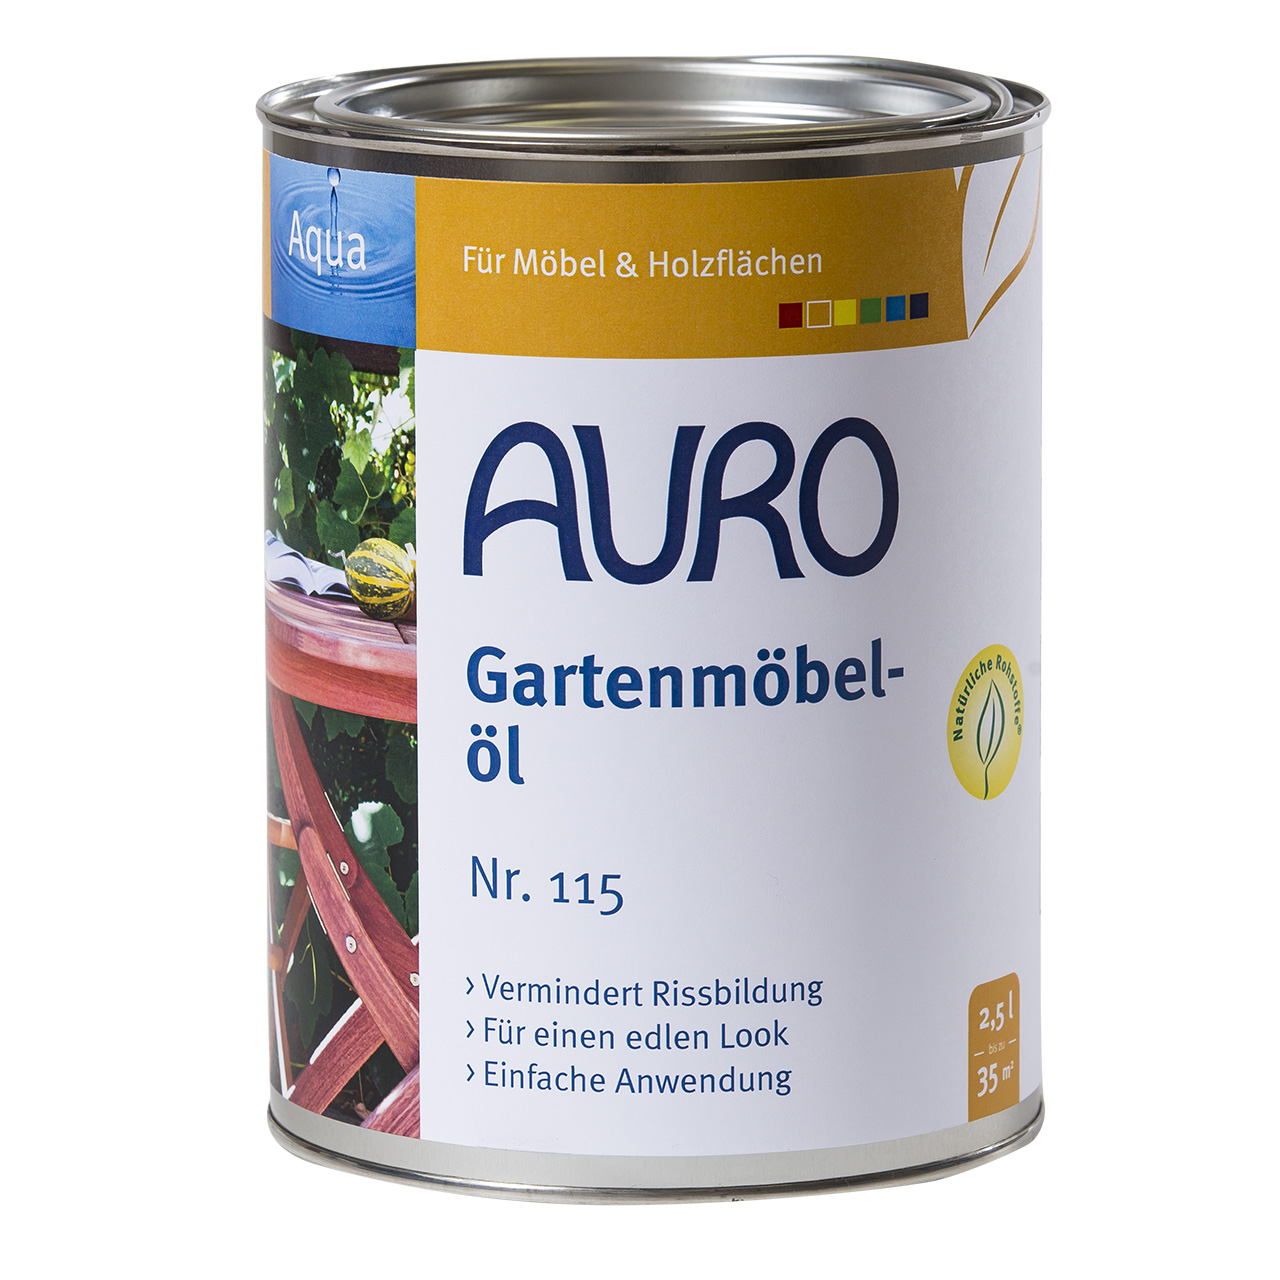 Auro Gartenmöbelöl Aqua Nr. 115, 2,5L